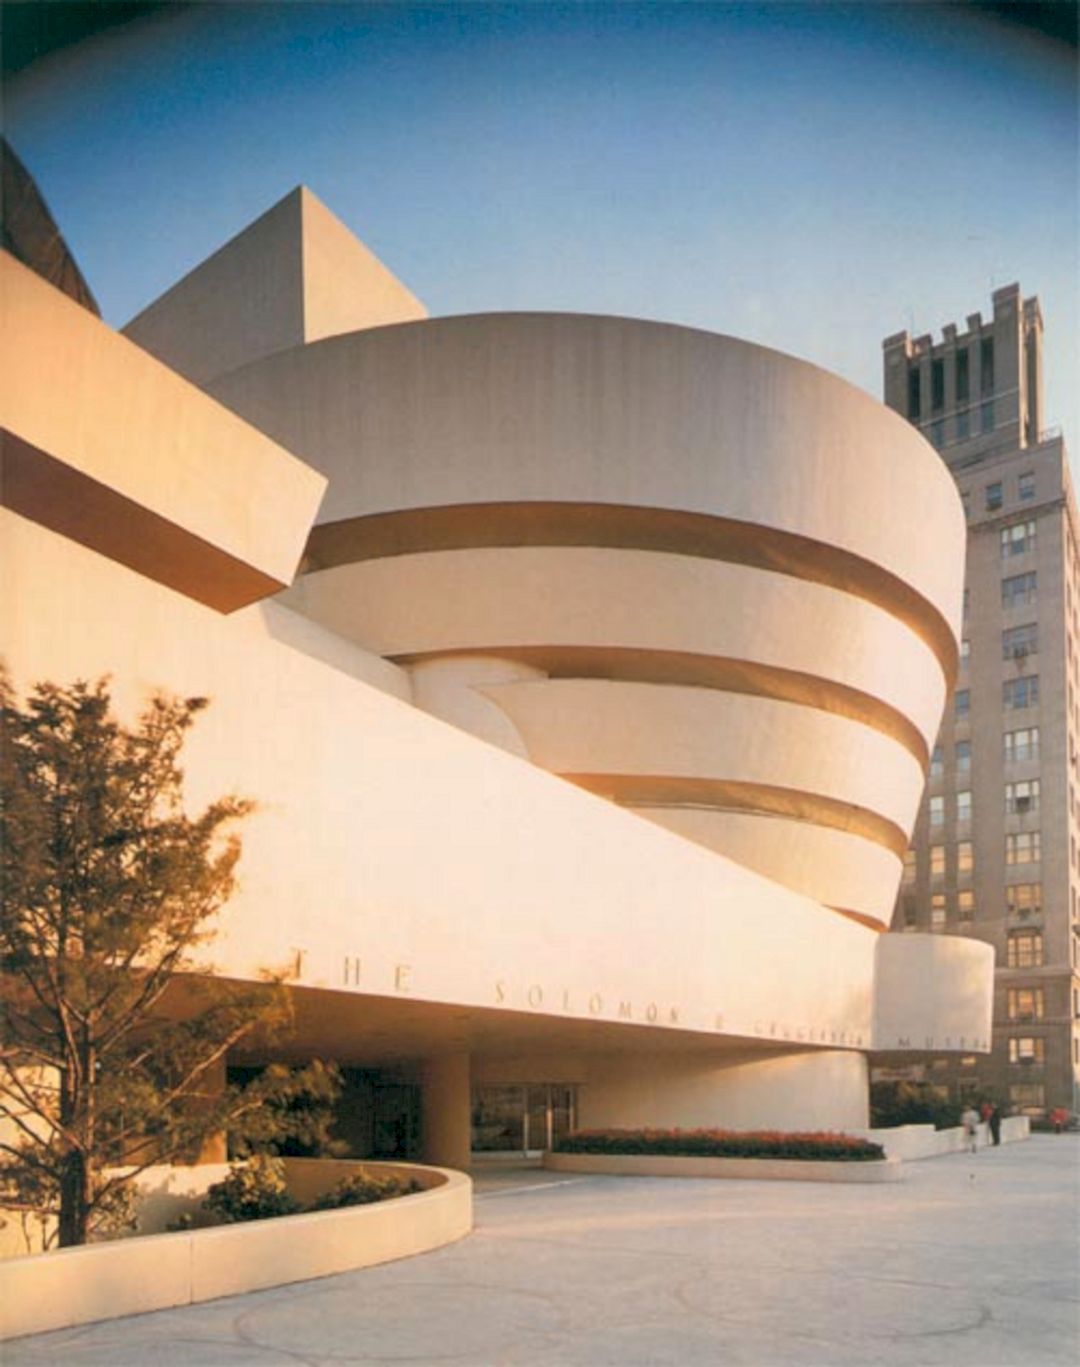 41 Frank Lloyd Wright Architecture (41 Frank Lloyd Wright ...